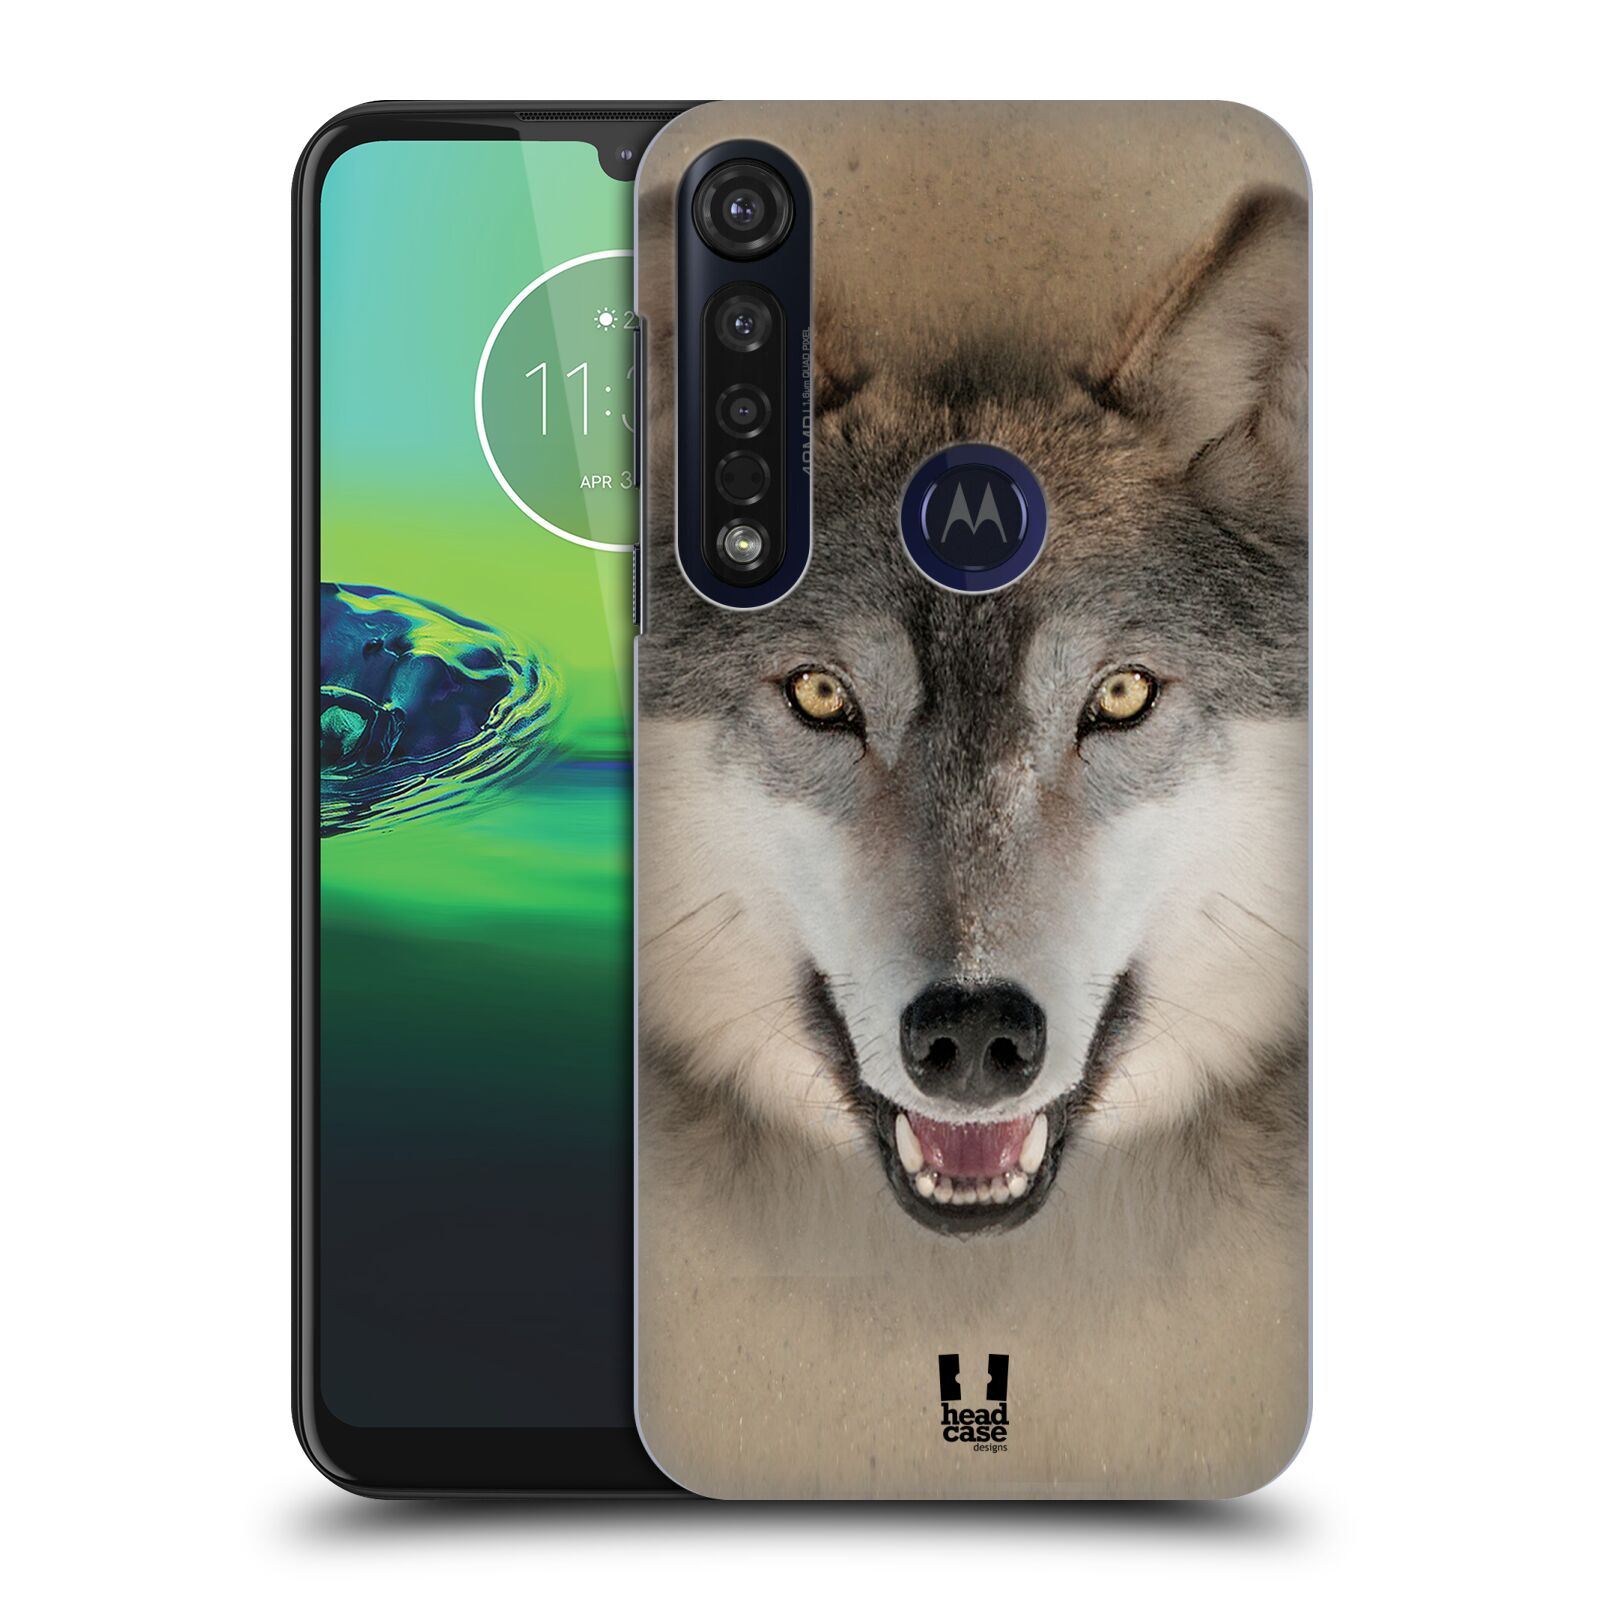 Pouzdro na mobil Motorola Moto G8 PLUS - HEAD CASE - vzor Zvířecí tváře 2 vlk šedý